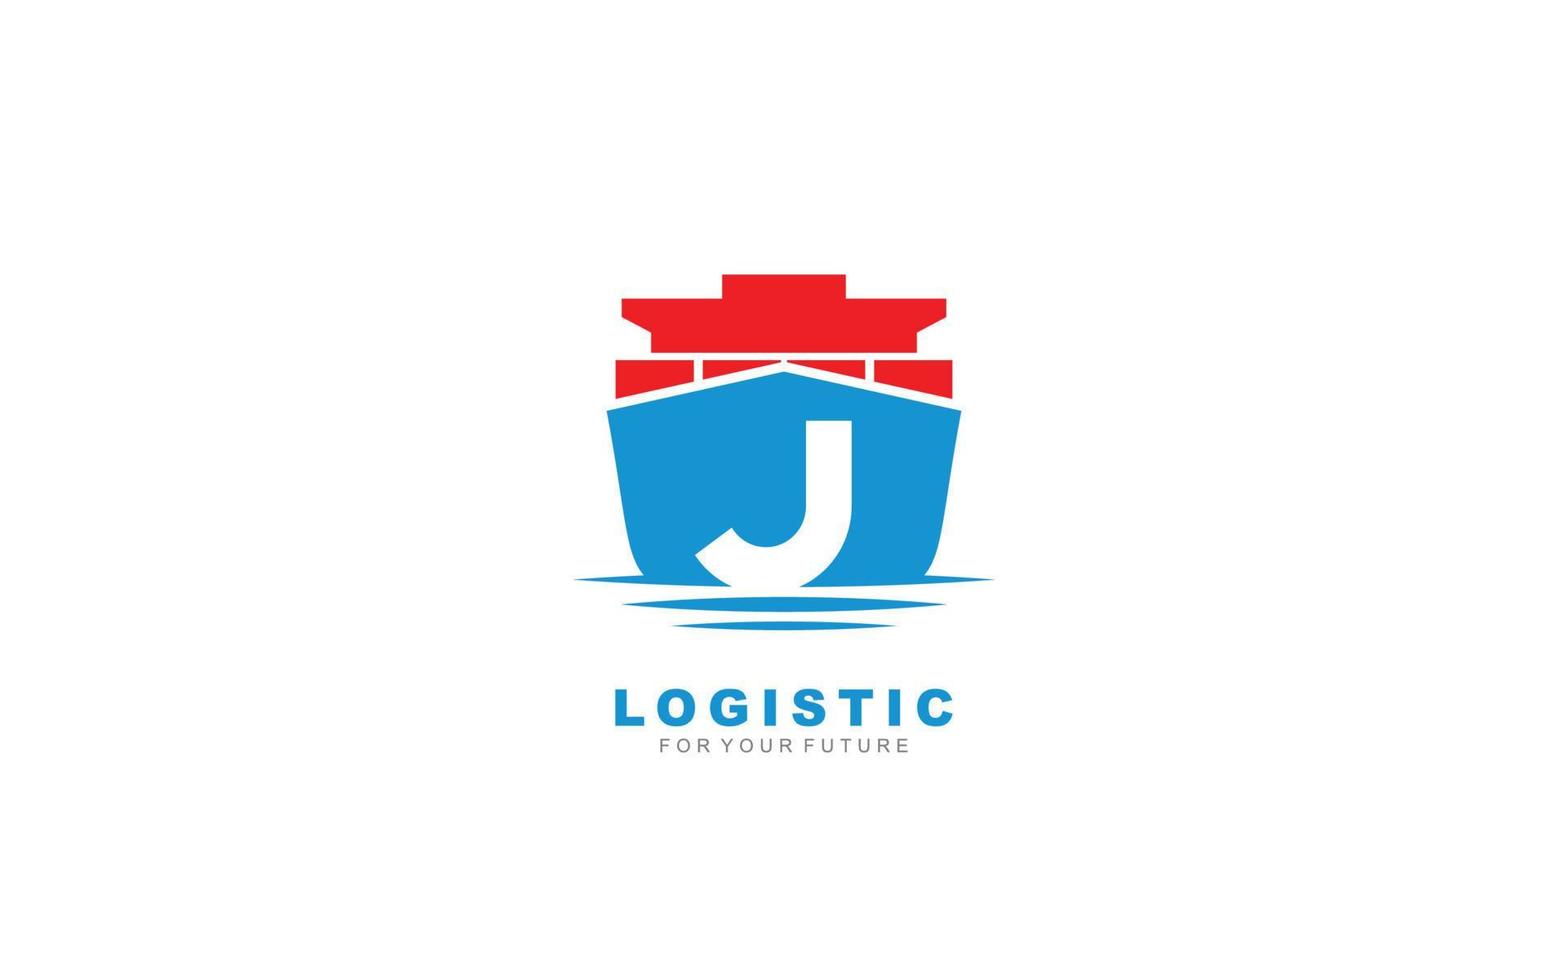 j logo logistic para empresa de marca. ilustración de vector de plantilla de envío para su marca.